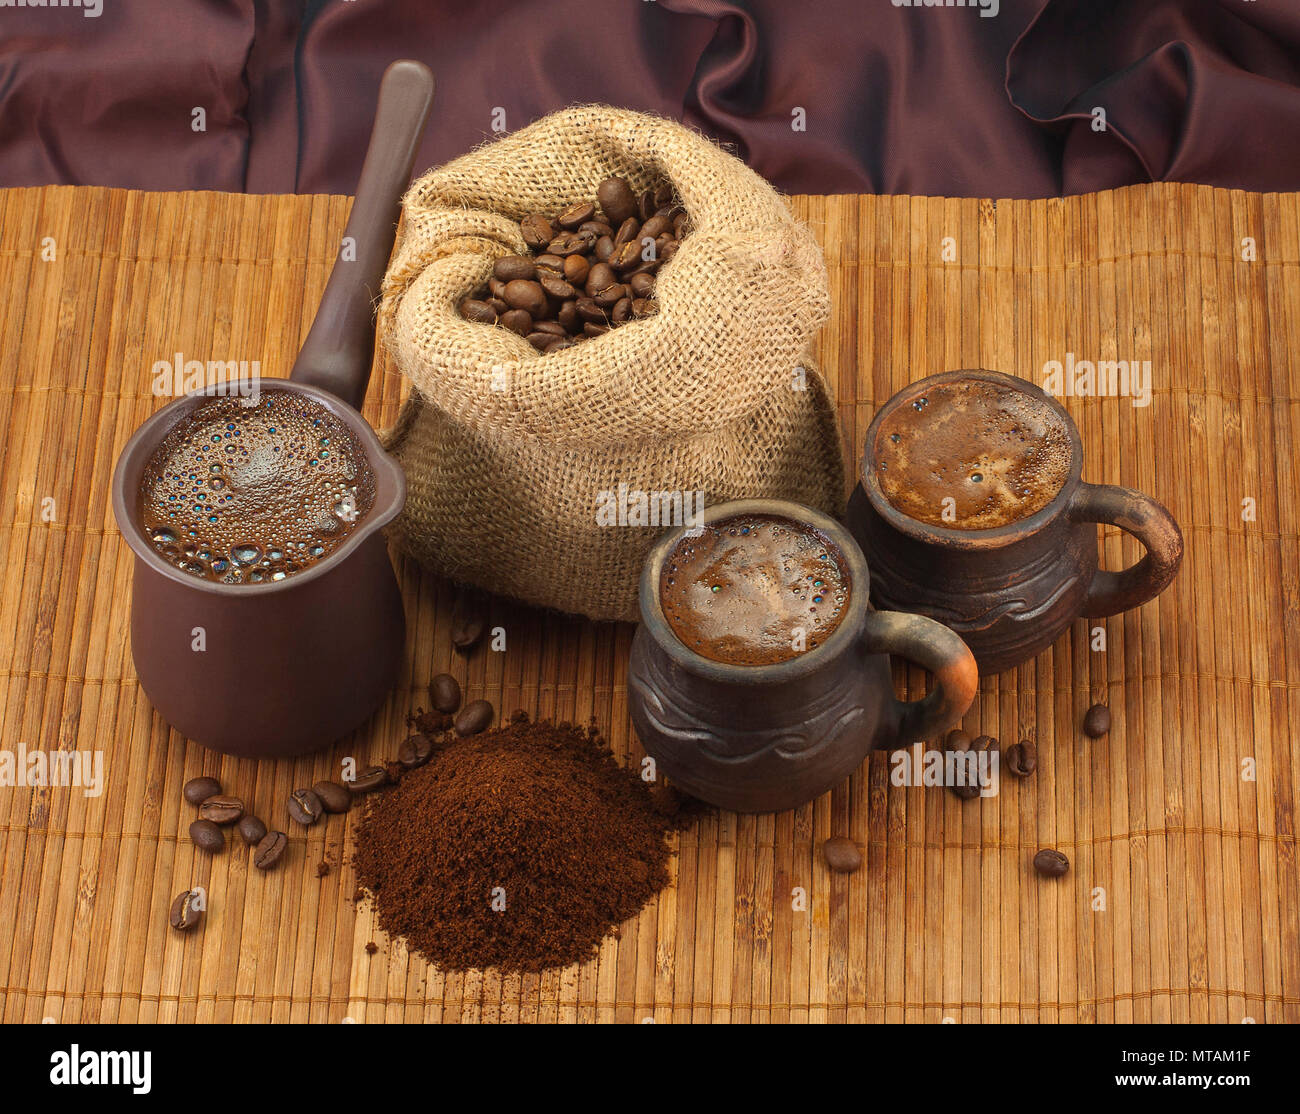 Immagini di caffè; ancora la vita di caffè; caffè organico; caffè in un cezve; caffè fresco; caffè caldo; i chicchi di caffè; caffè macinato; tazze da caffè Foto Stock